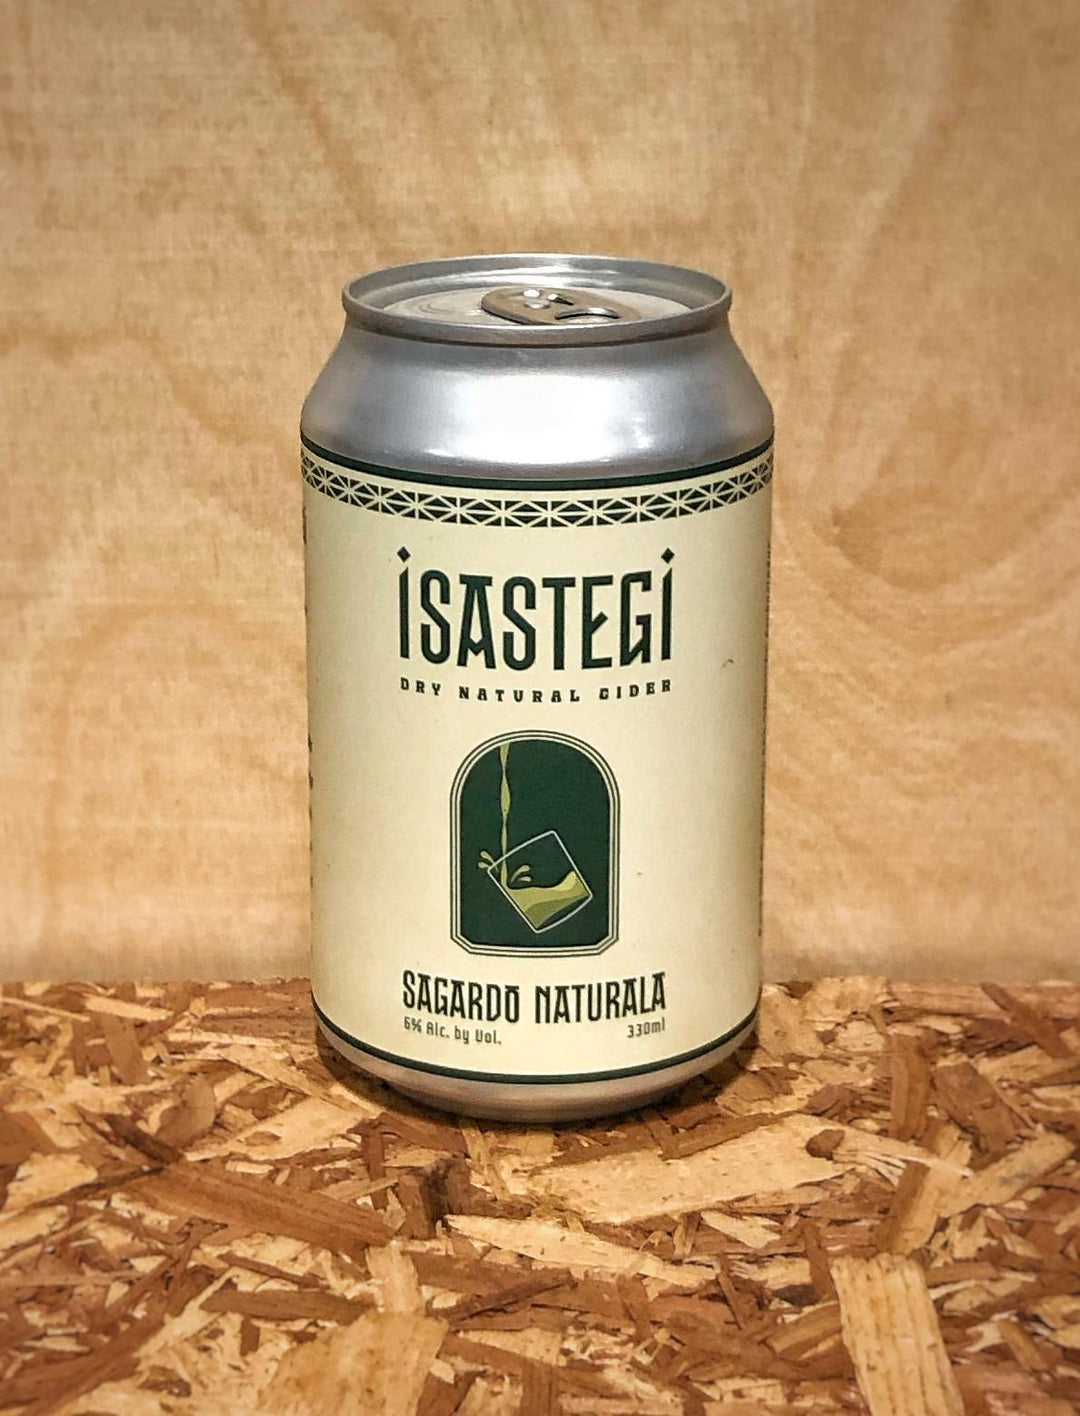 Isastegi Sagardo Naturala Cider Tolosa (Basque Country, Spain)